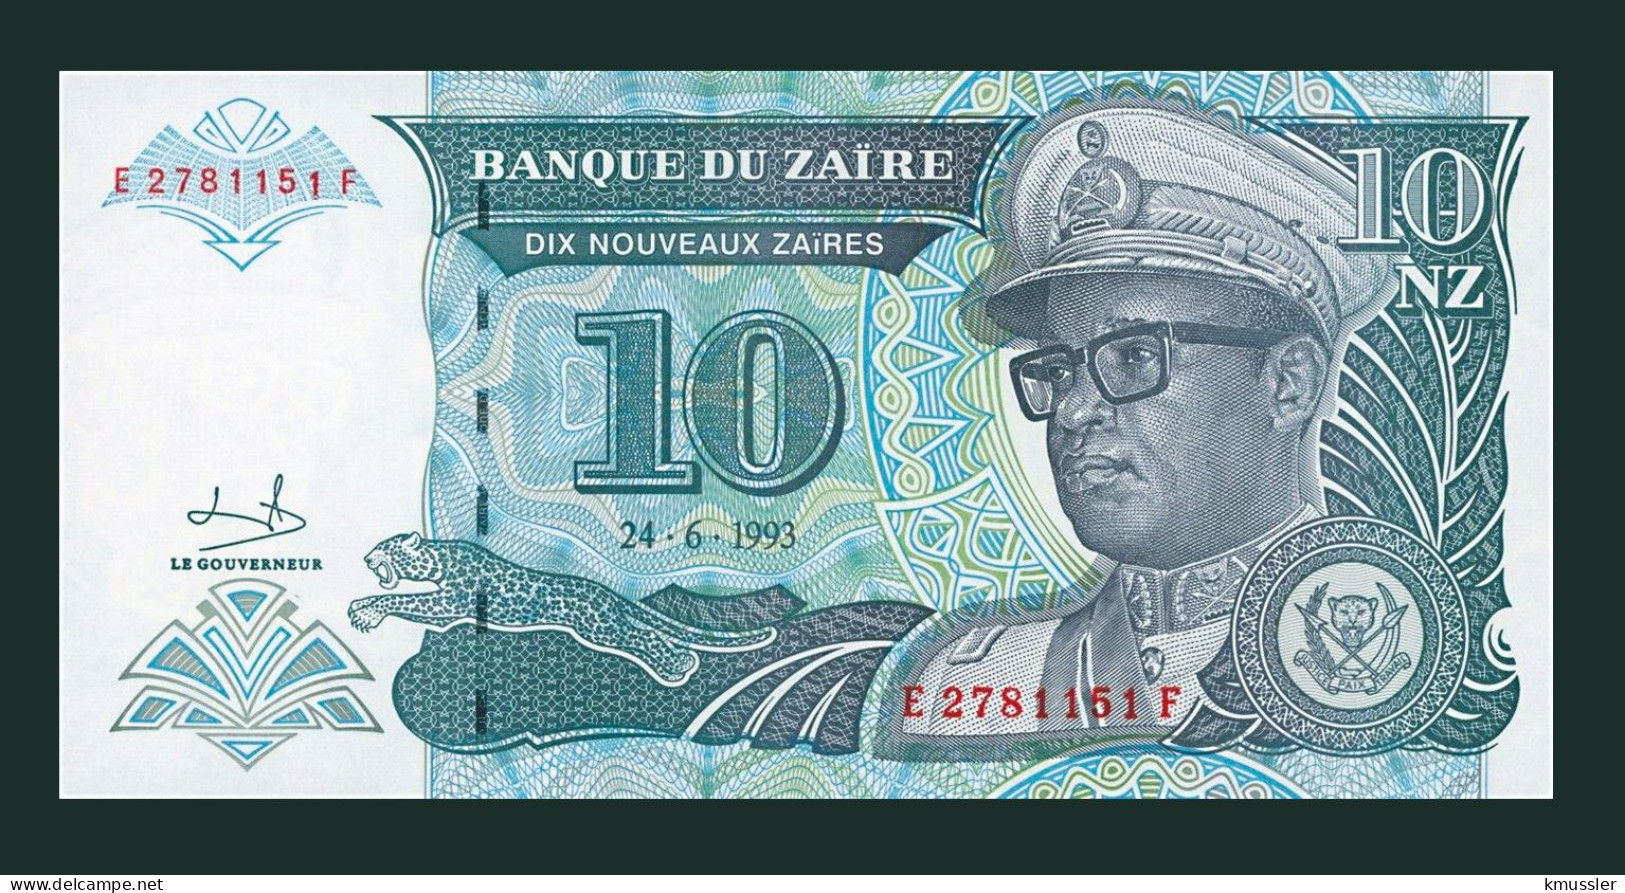 # # # Banknote Zaire 10 Nouveaux Zaires 1993 (P-54) G-D UNC # # # - Zaire